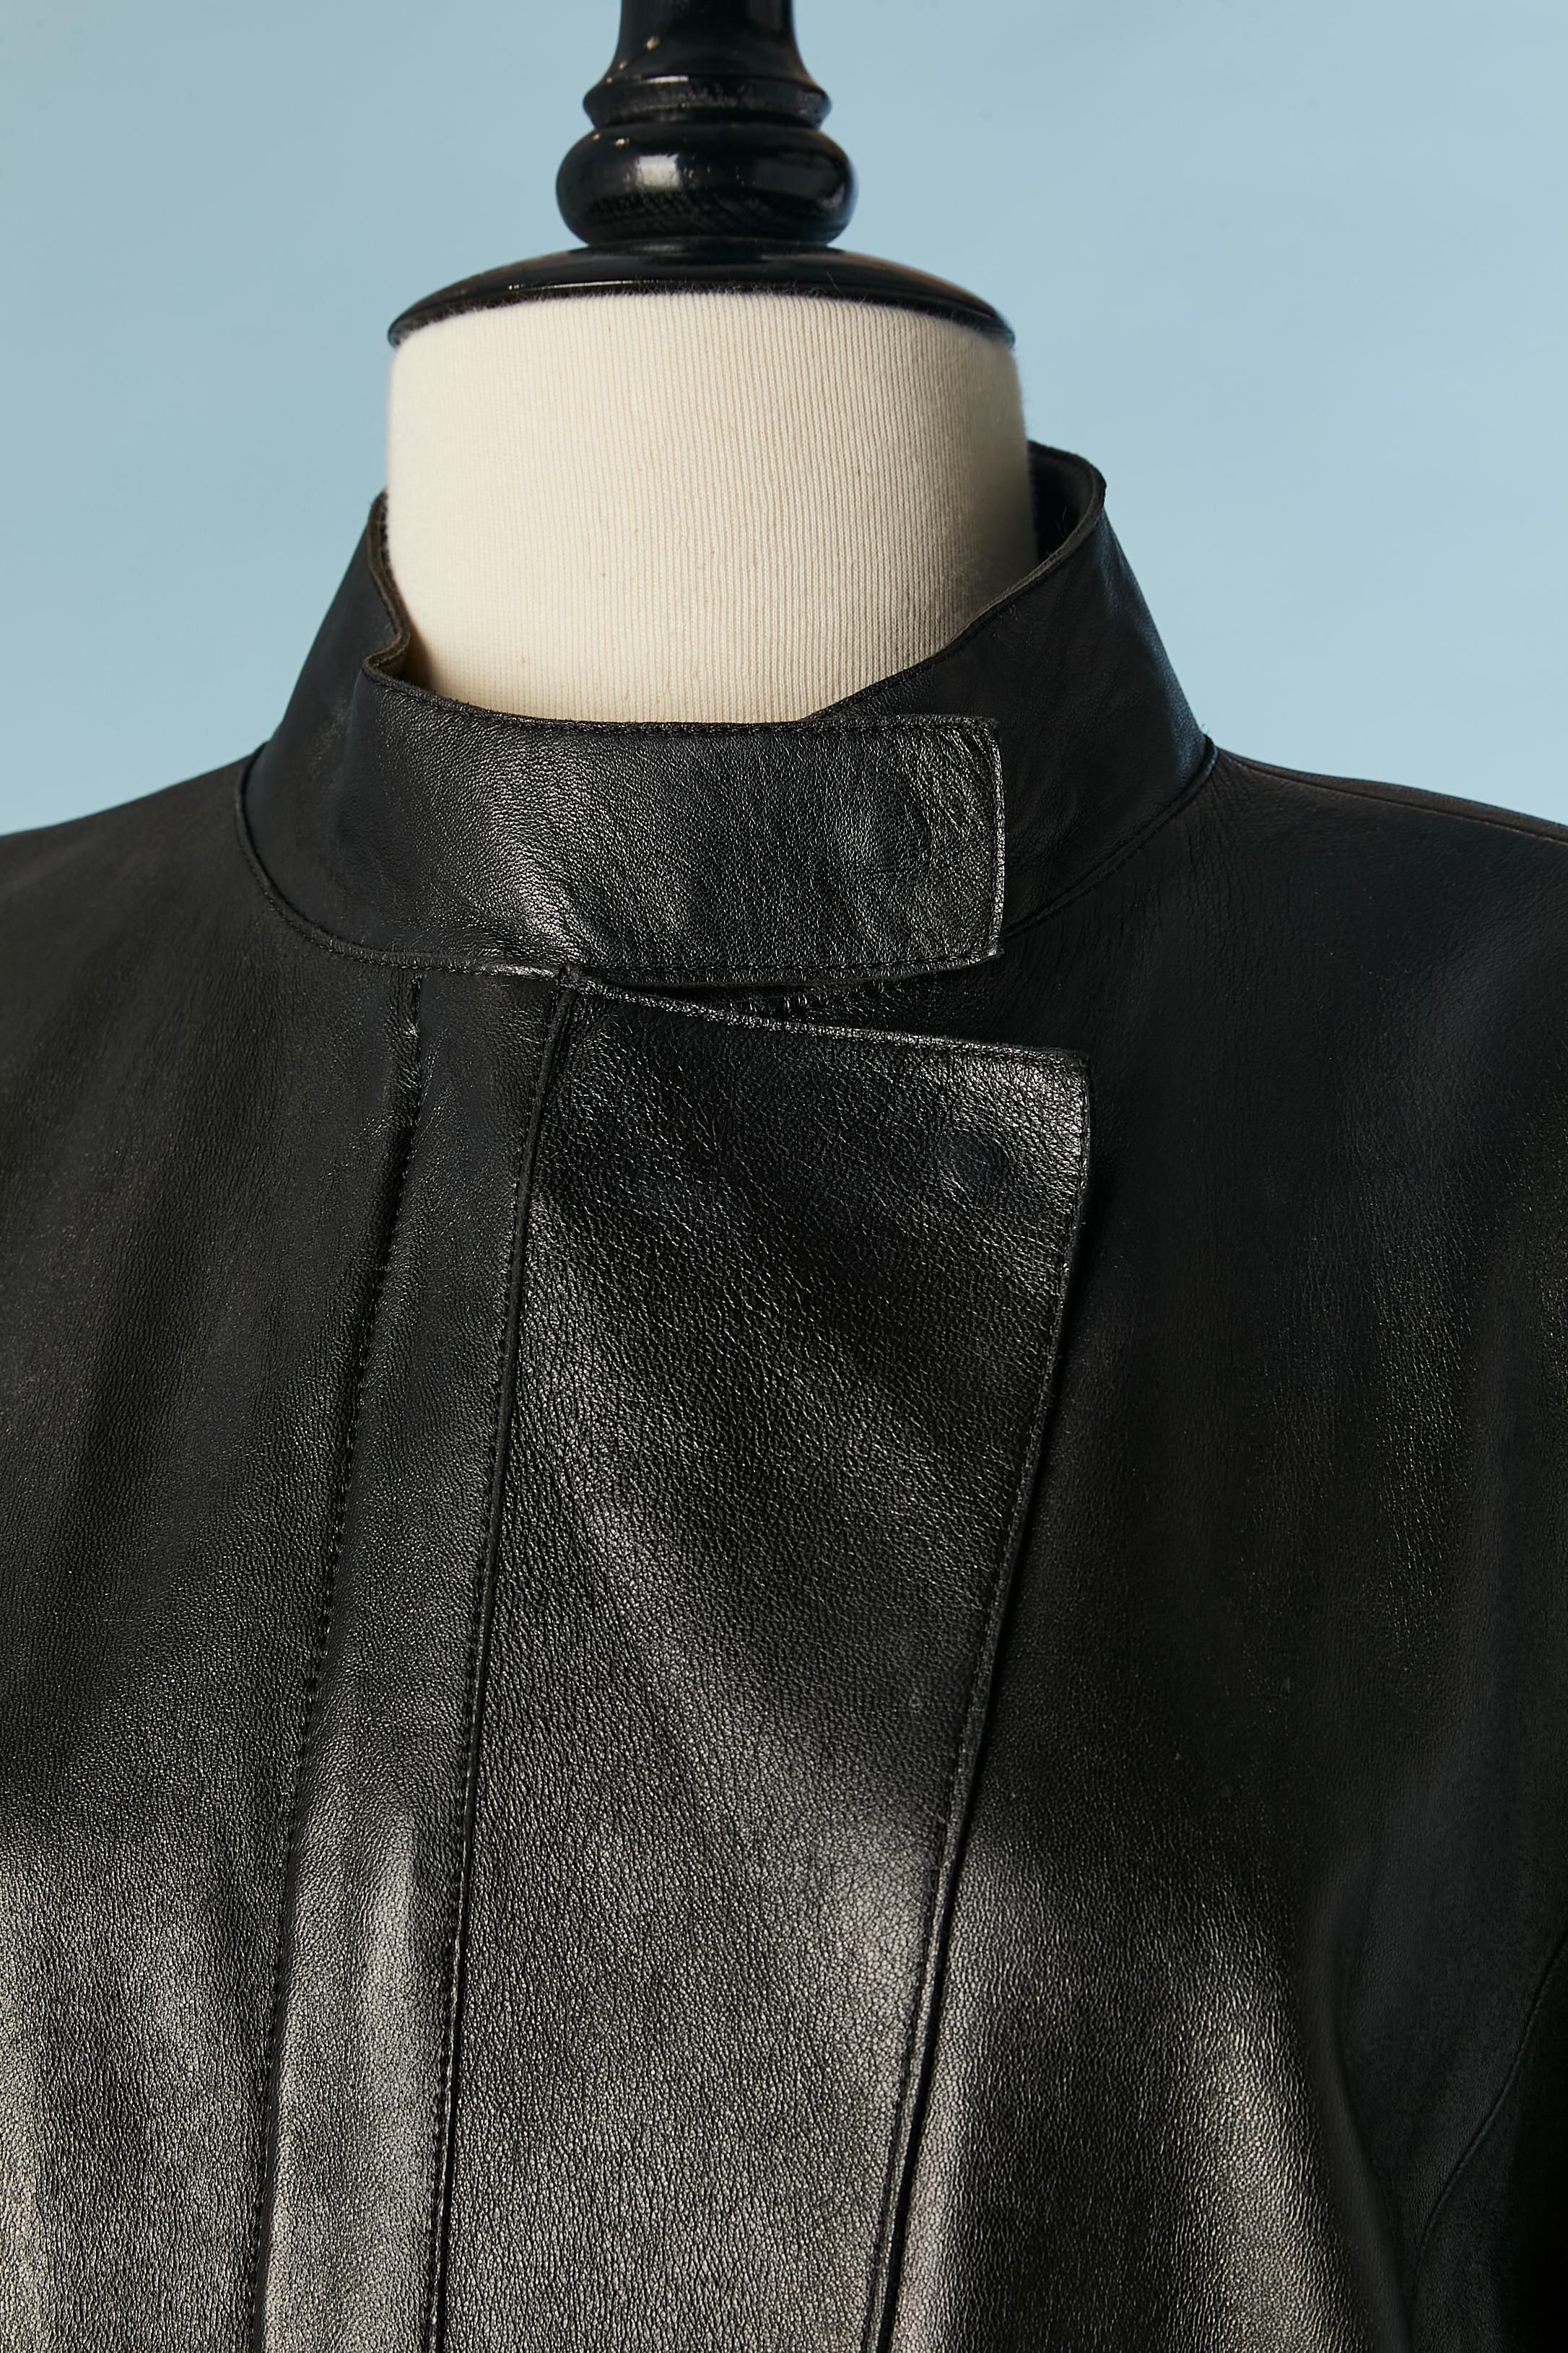 Manteau en cuir noir avec empiècements en cuir beige (sur les côtés et à l'intérieur des poches) et fermeture à glissière avec double tirette de marque. Fermeture à bouton-pression sur le haut de la fermeture éclair. Des pads d'épaule. Poches sur